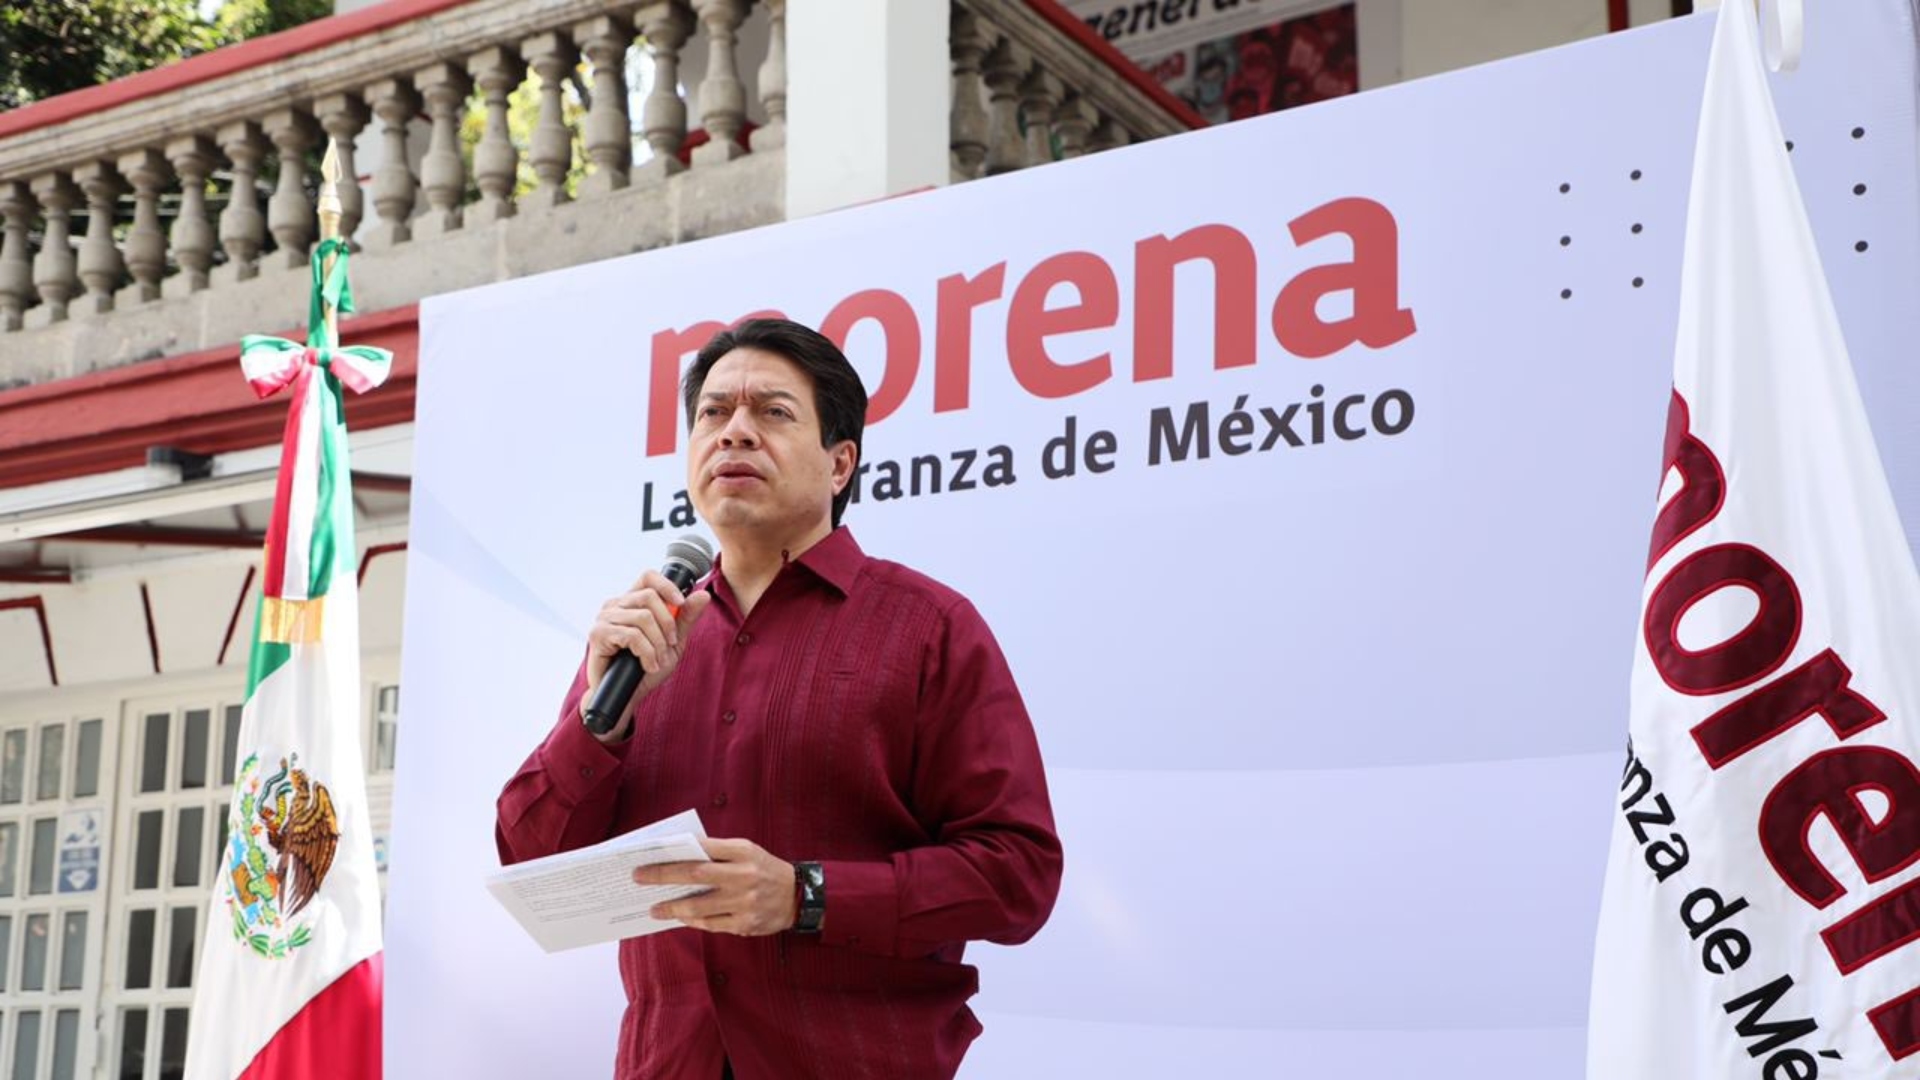 El líder nacional de Morena adelantó que no habrá amiguismo ni influyentismo en la elección de candidatos (Foto: Cortesía Morena)